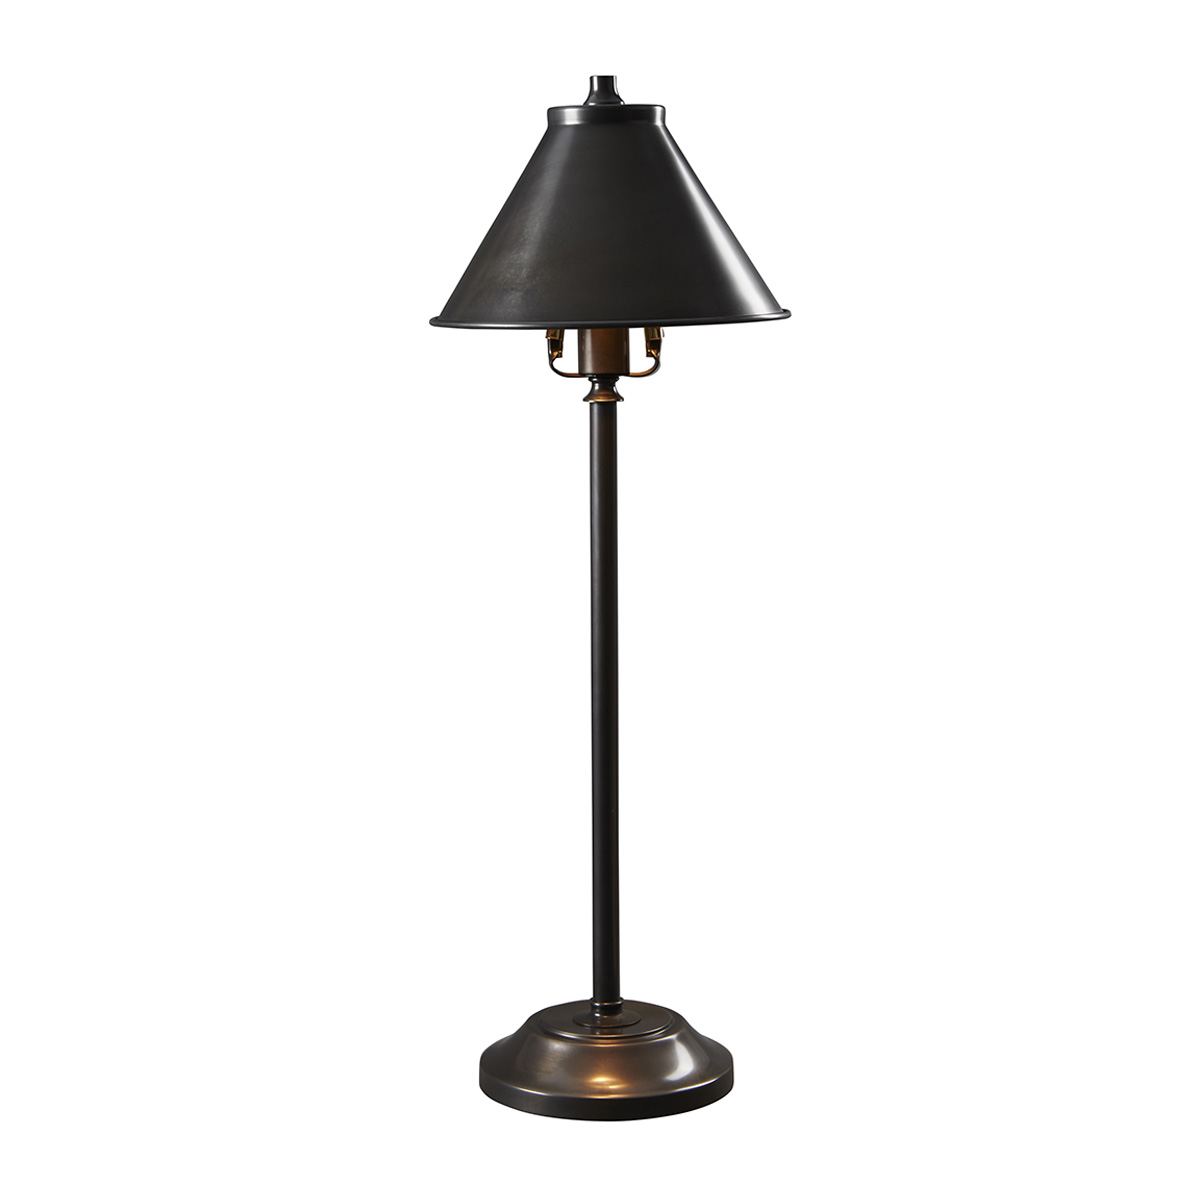 Настольная лампа PV-SL-OB. Бренд: Elstead Lighting. Настольные лампы